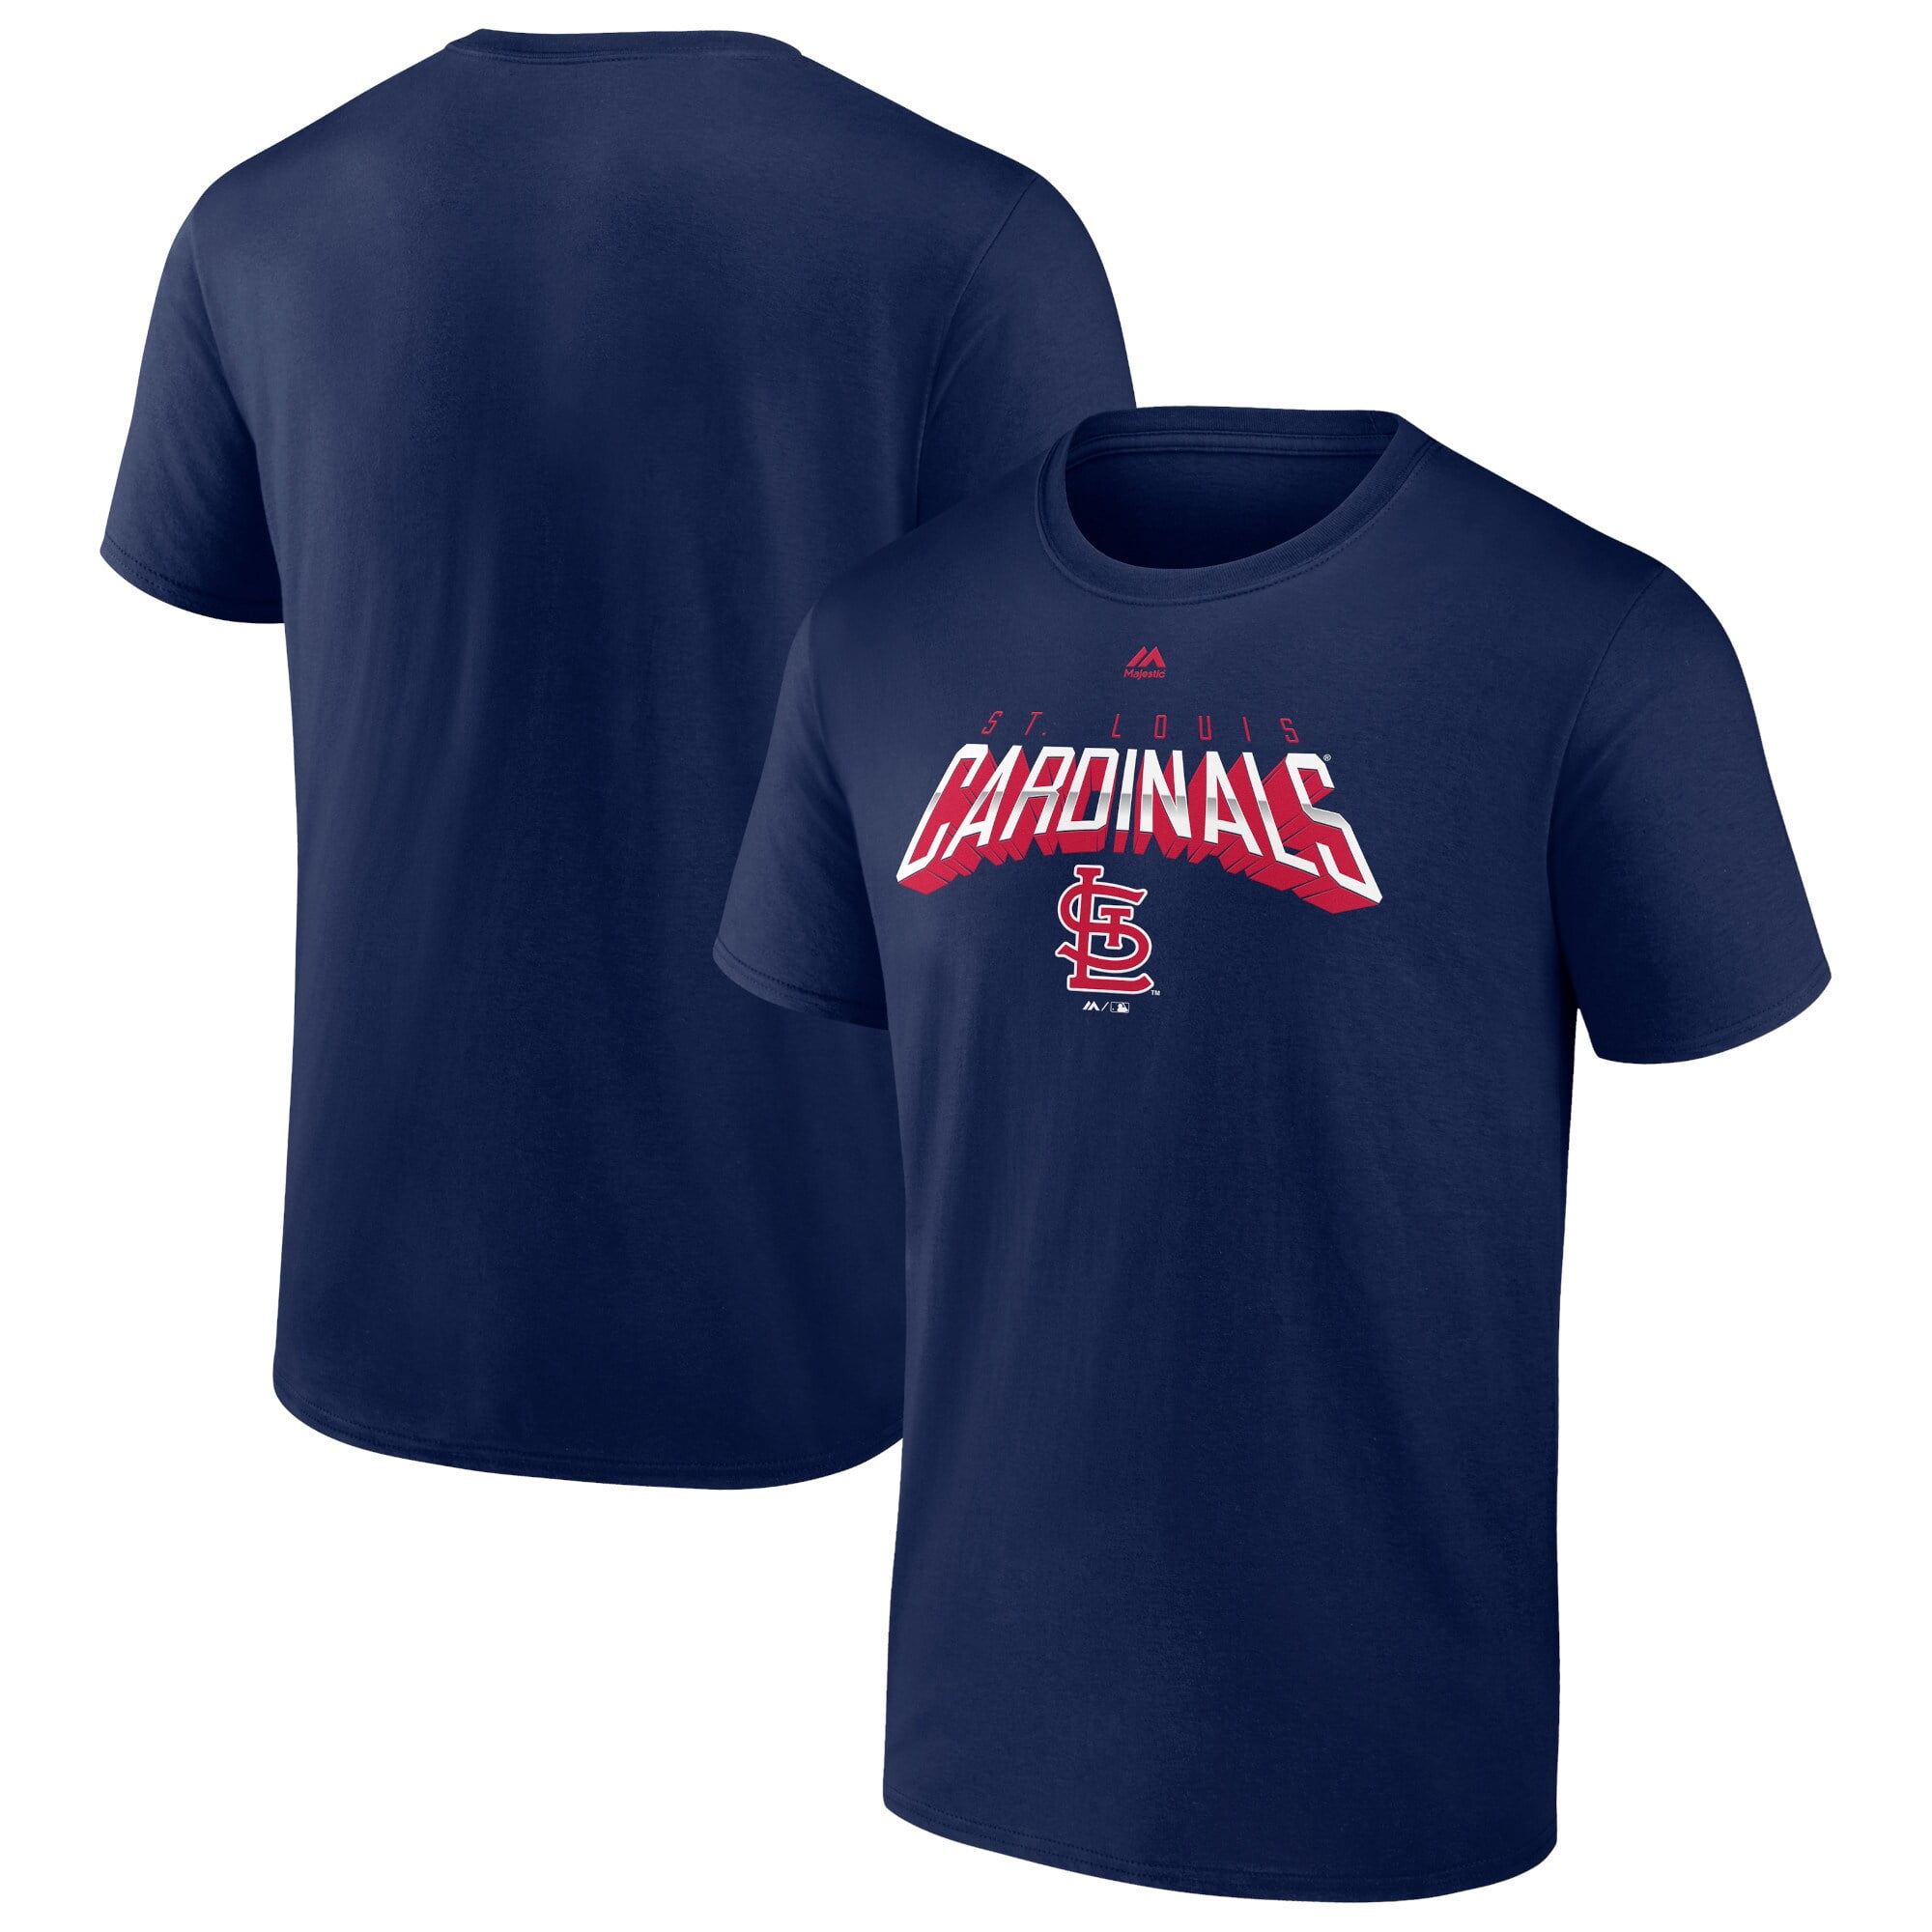 Men's Fanatics Branded Navy St. Louis Cardinals Sweep T-Shirt 